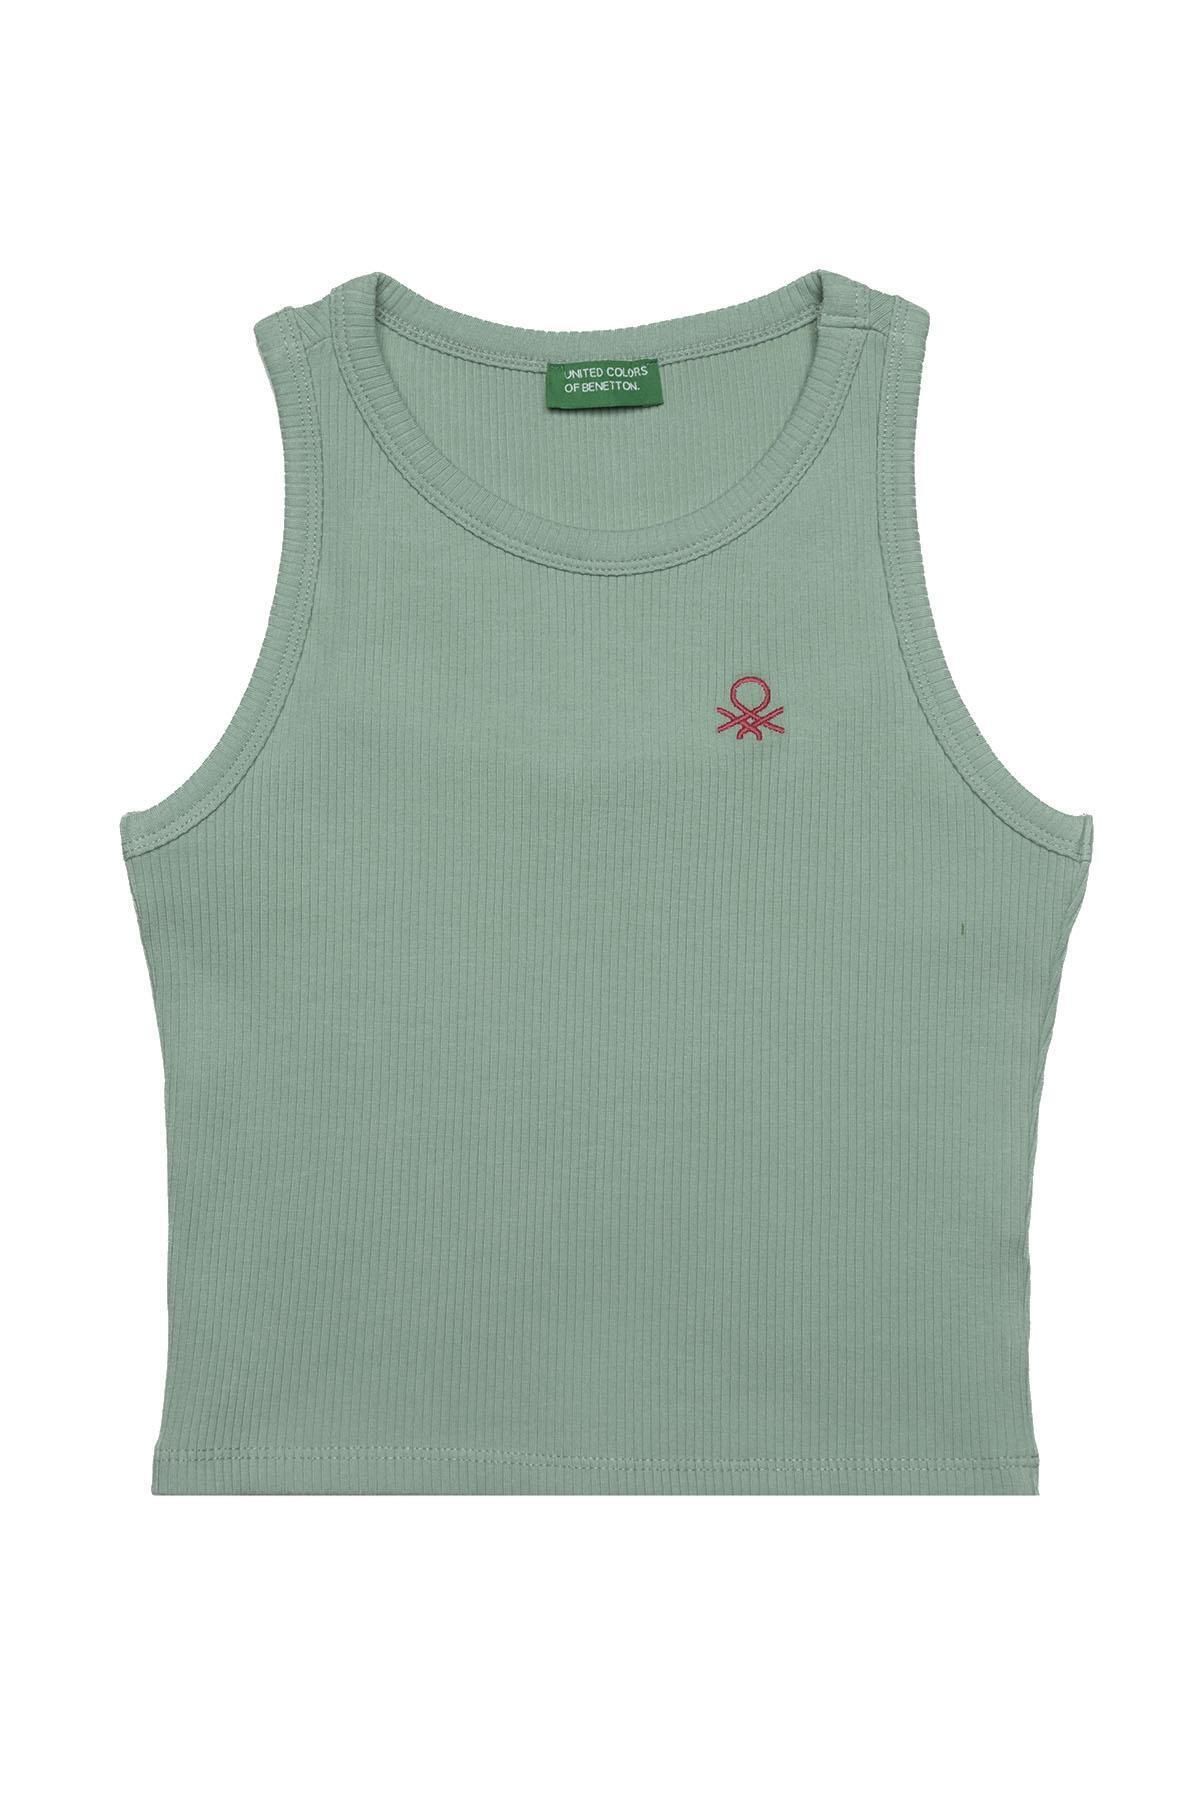 Benetton Kız Çocuk T-shirt Bnt-g20484